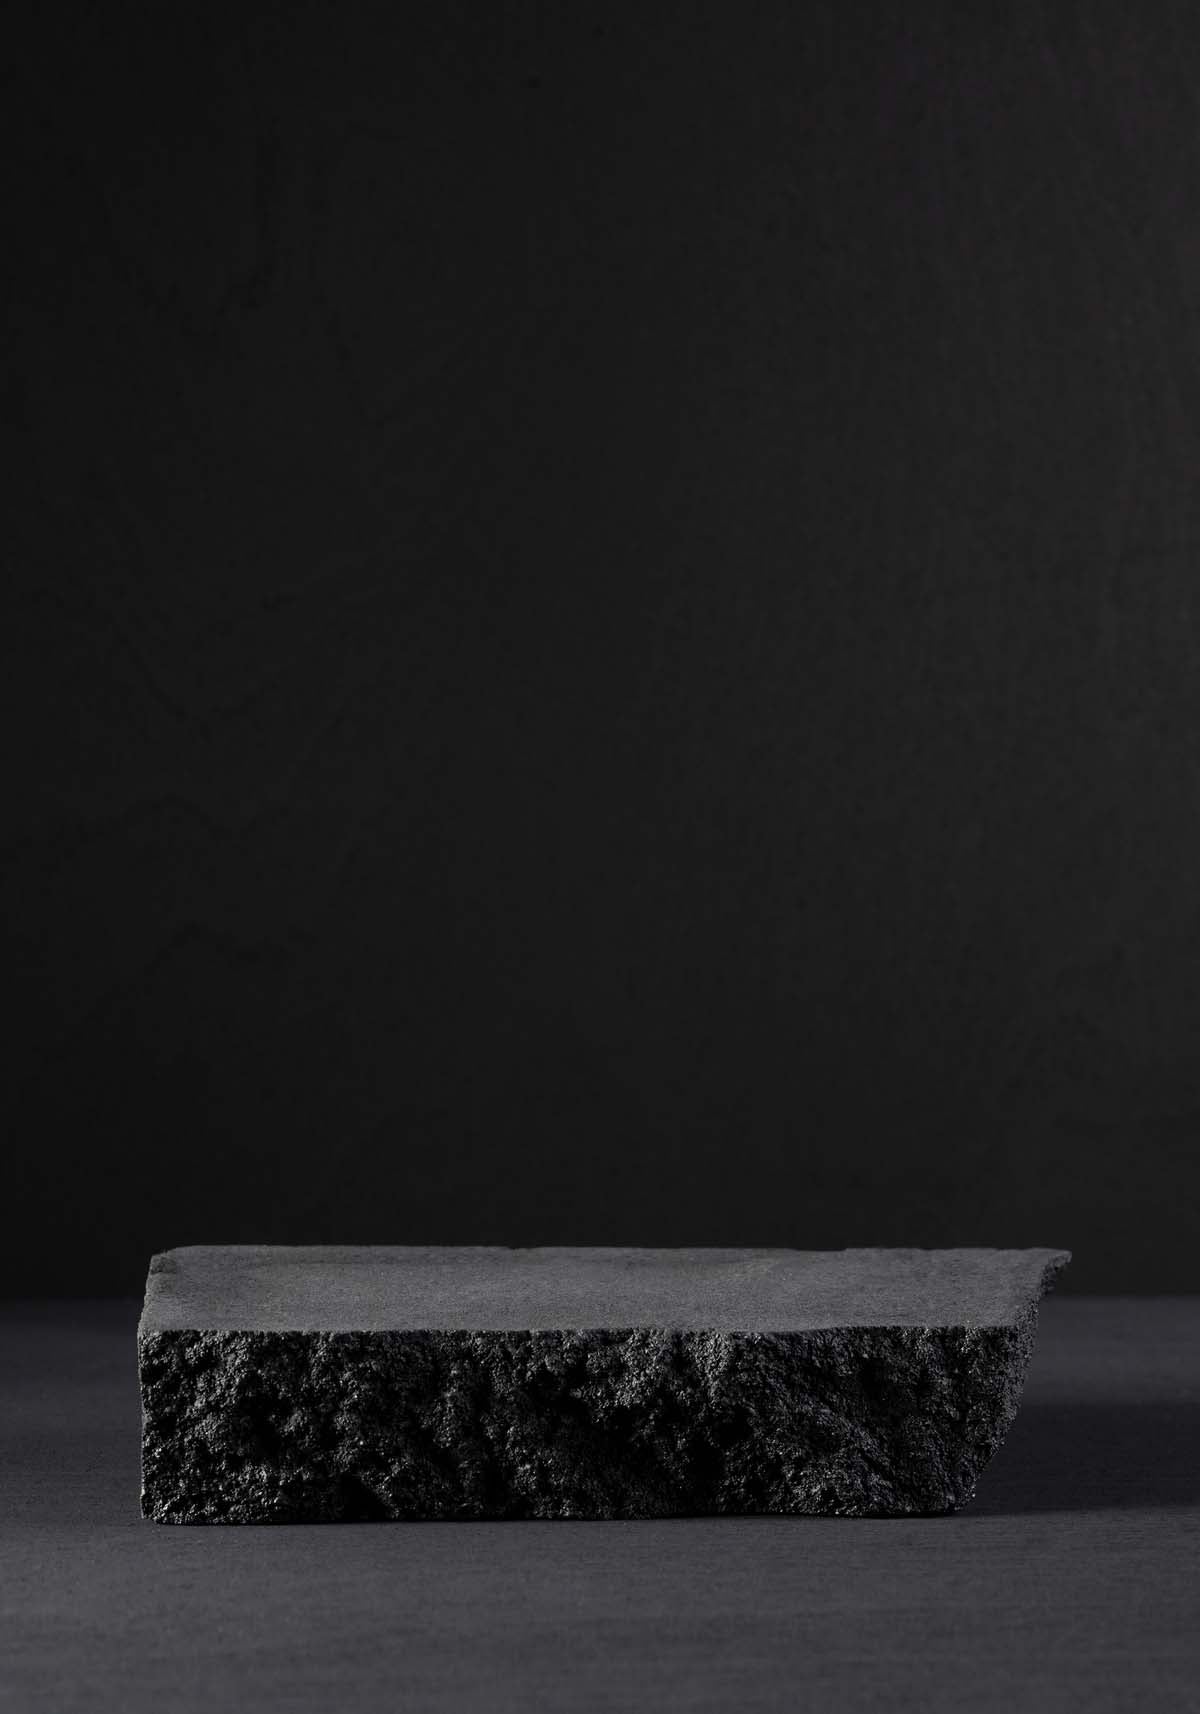 Black Rock Poster - KAQTU Design